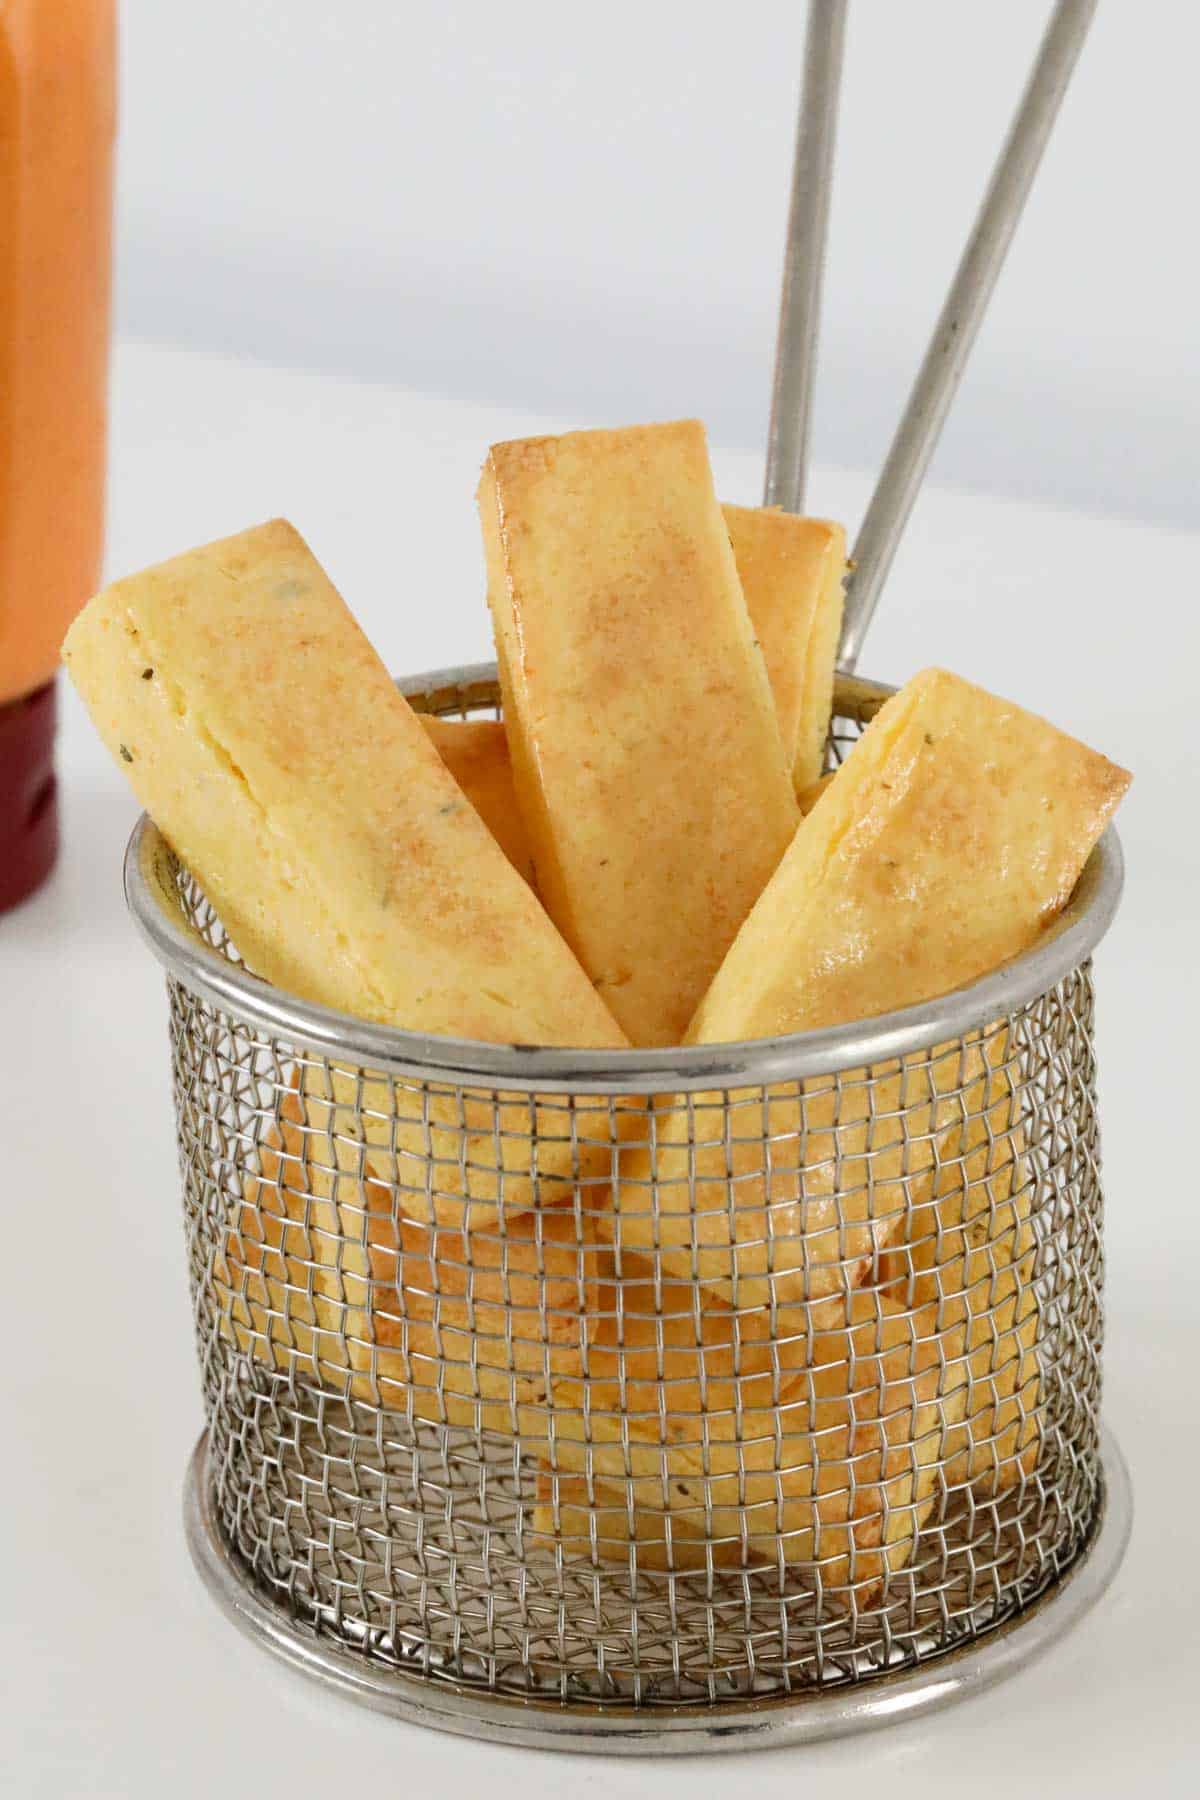 Polenta fries in a chip basket.